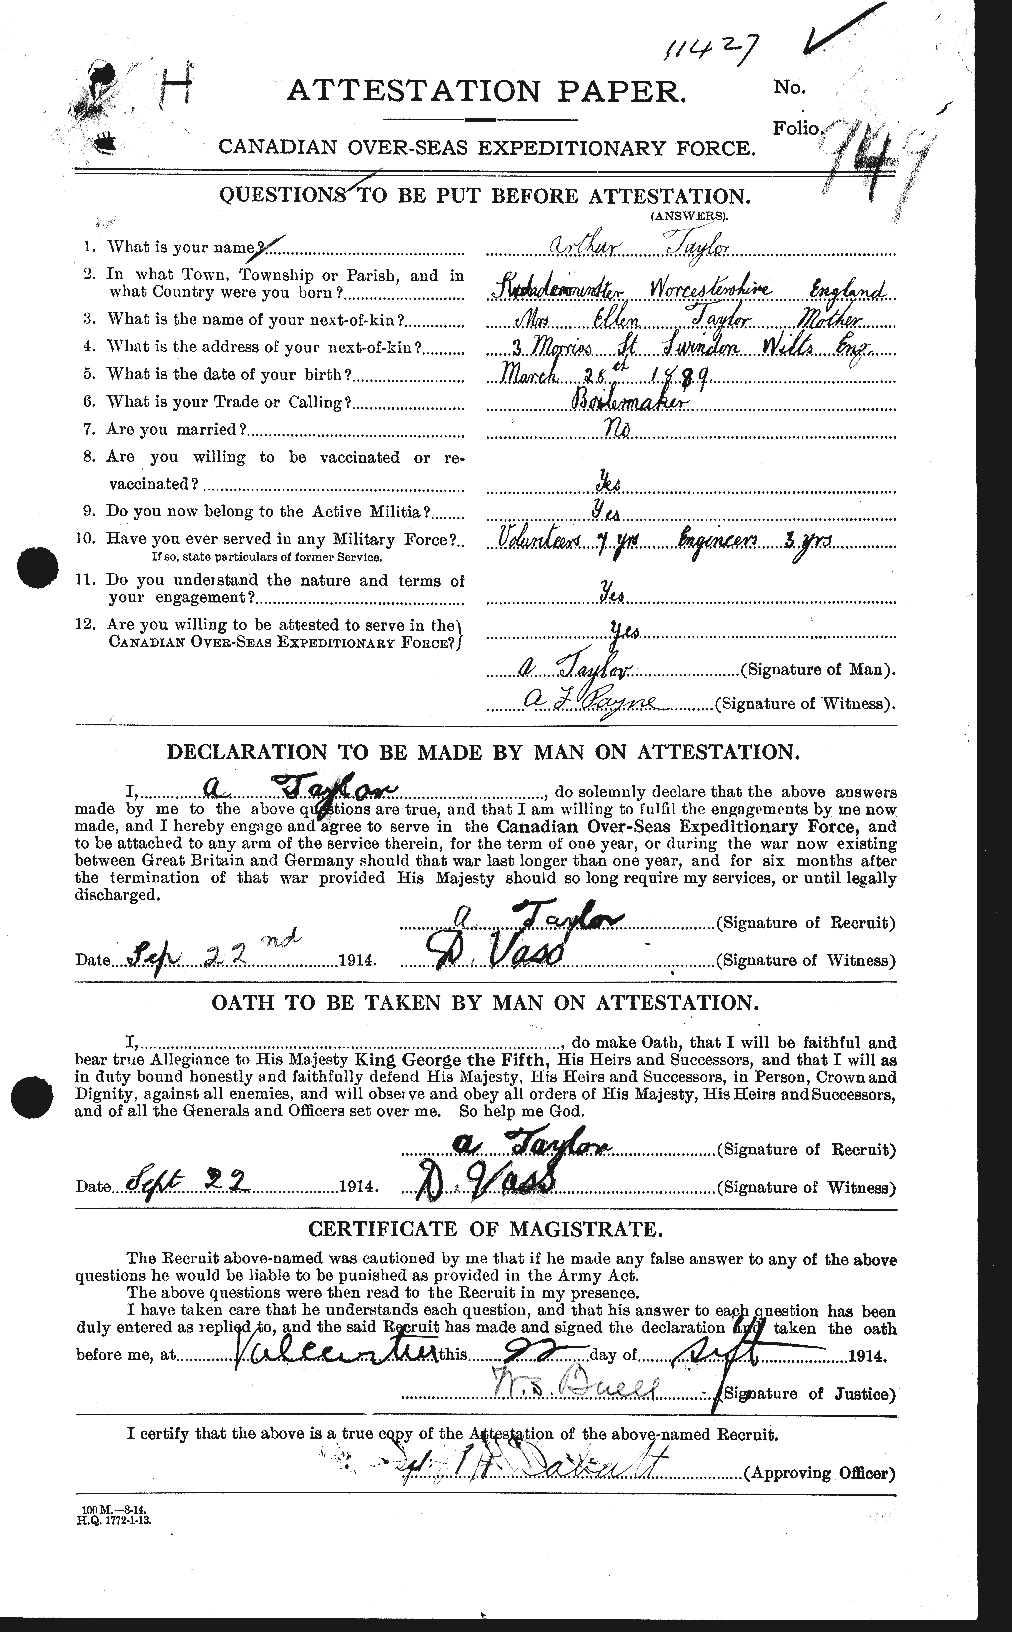 Dossiers du Personnel de la Première Guerre mondiale - CEC 626261a